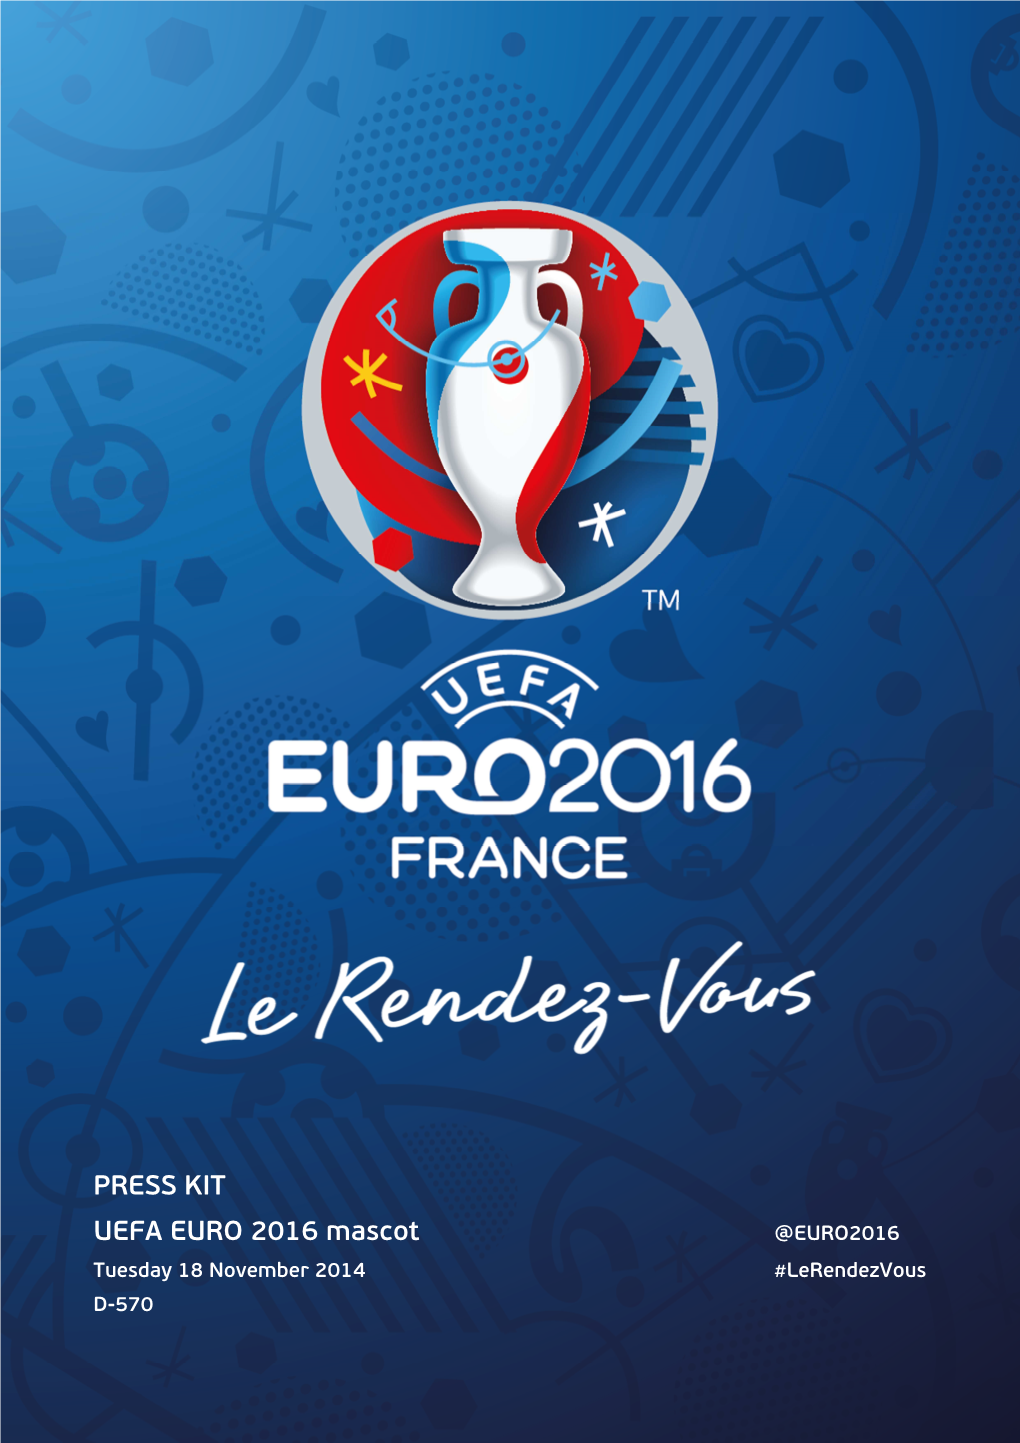 UEFA EURO 2016 Mascot Presentation Press